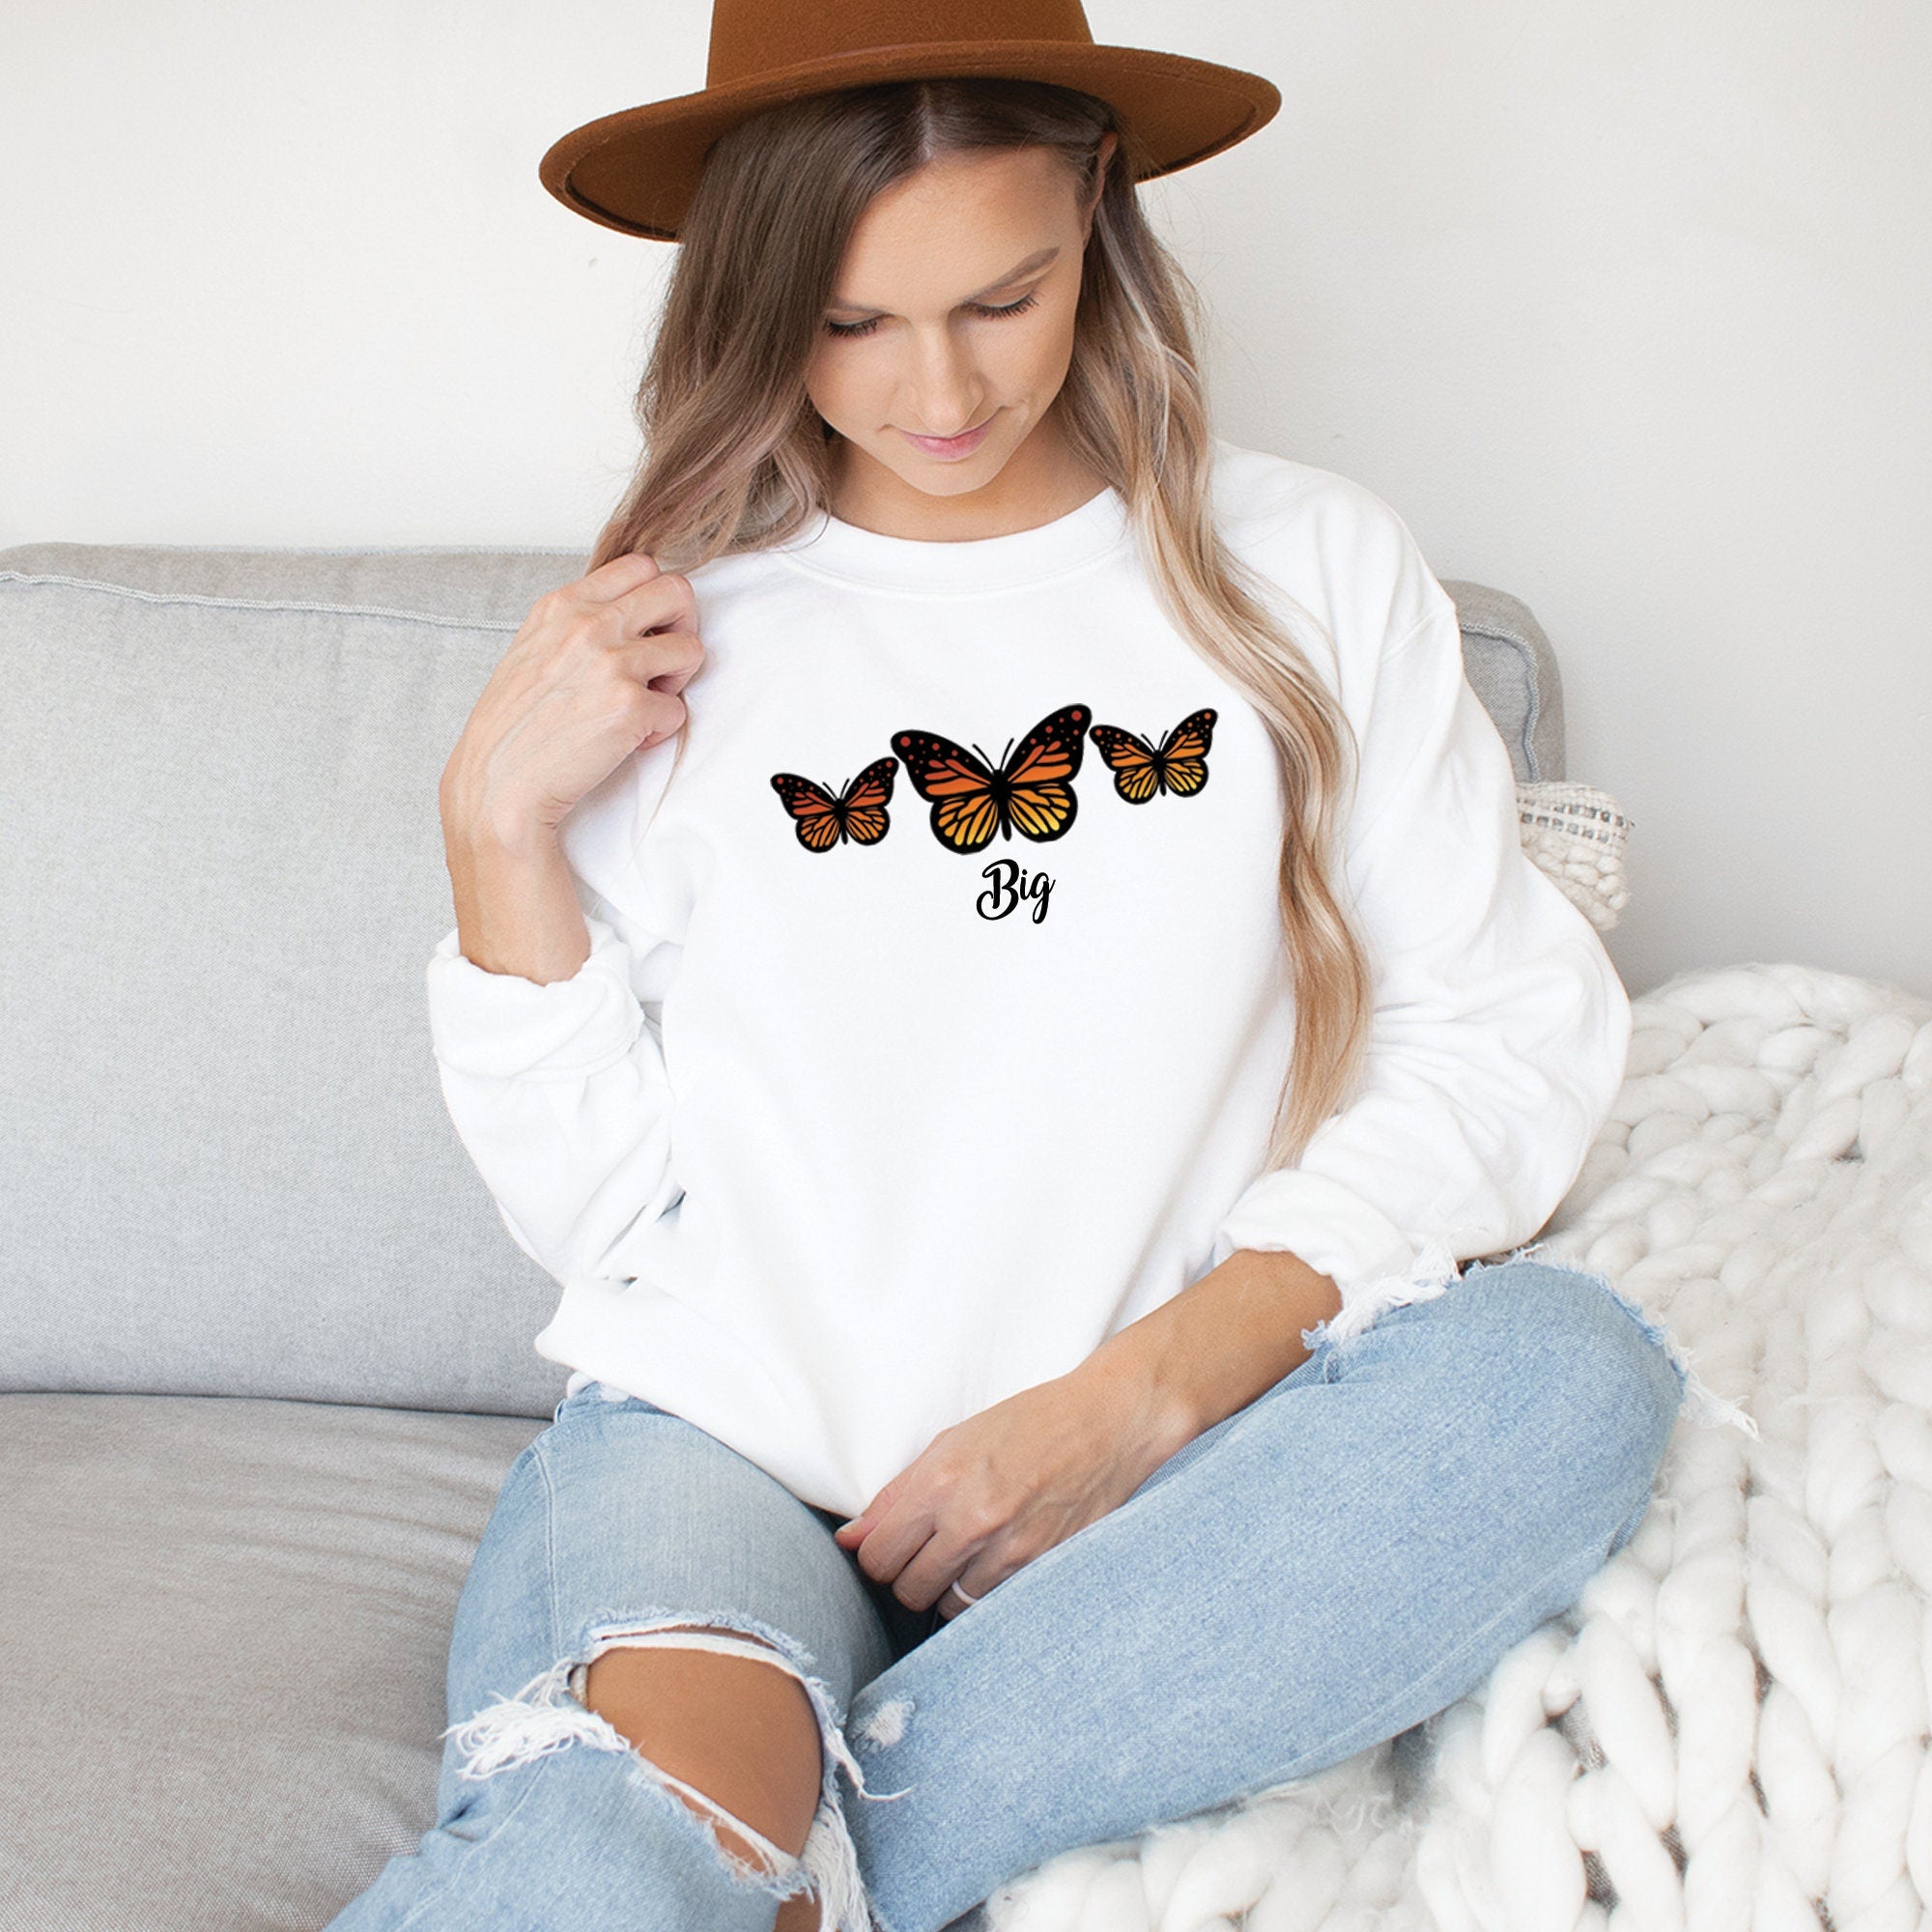 Big Little Butterfly Sweatshirt, Sorority Big Little, Matching Sweater, Big Little Reveal, Sorority Gift